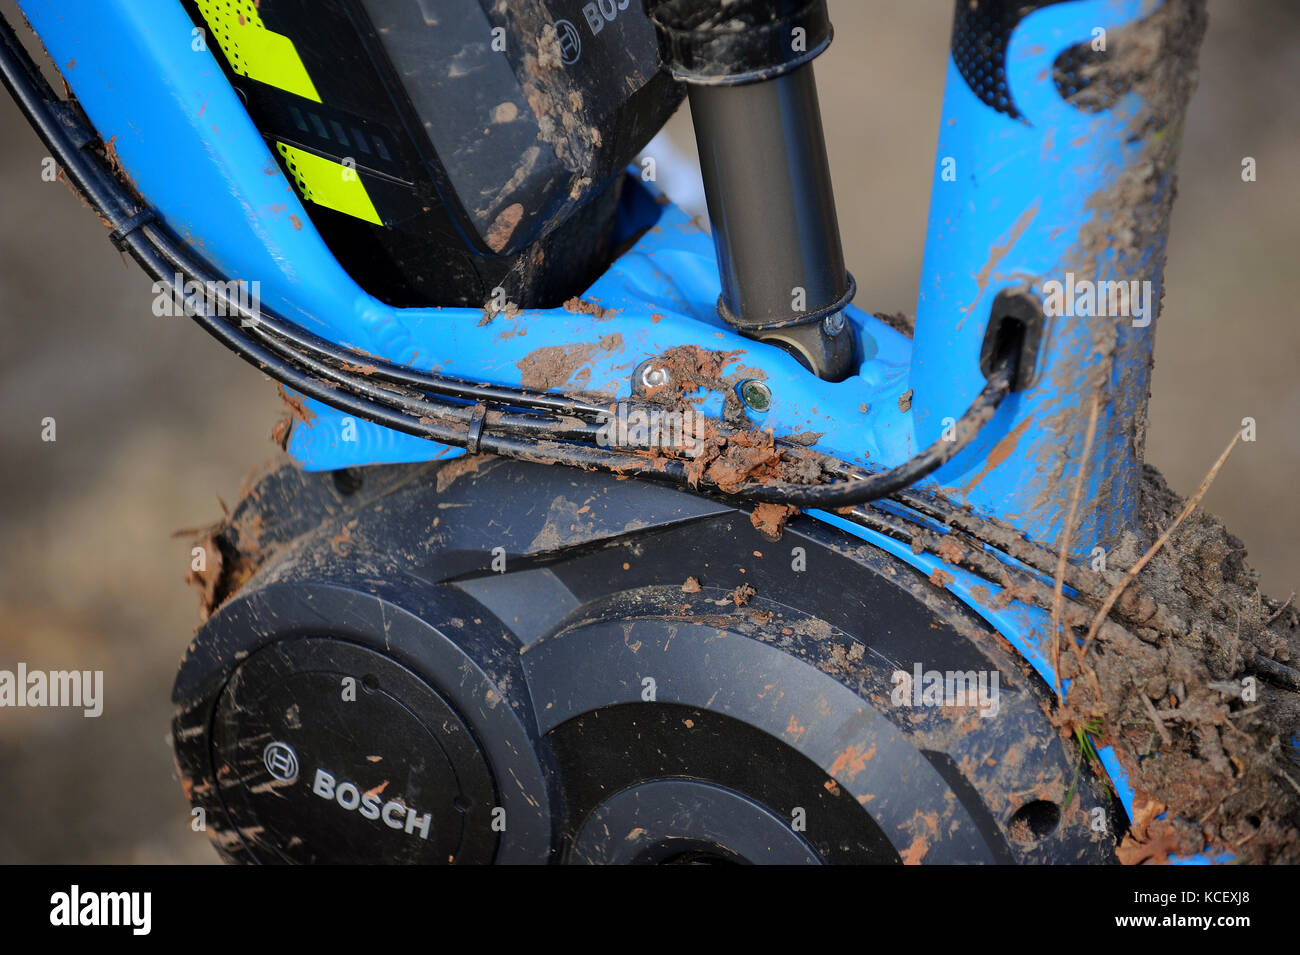 Une pédale aider ebike vtt avec un moteur électrique Bosch Photo Stock -  Alamy